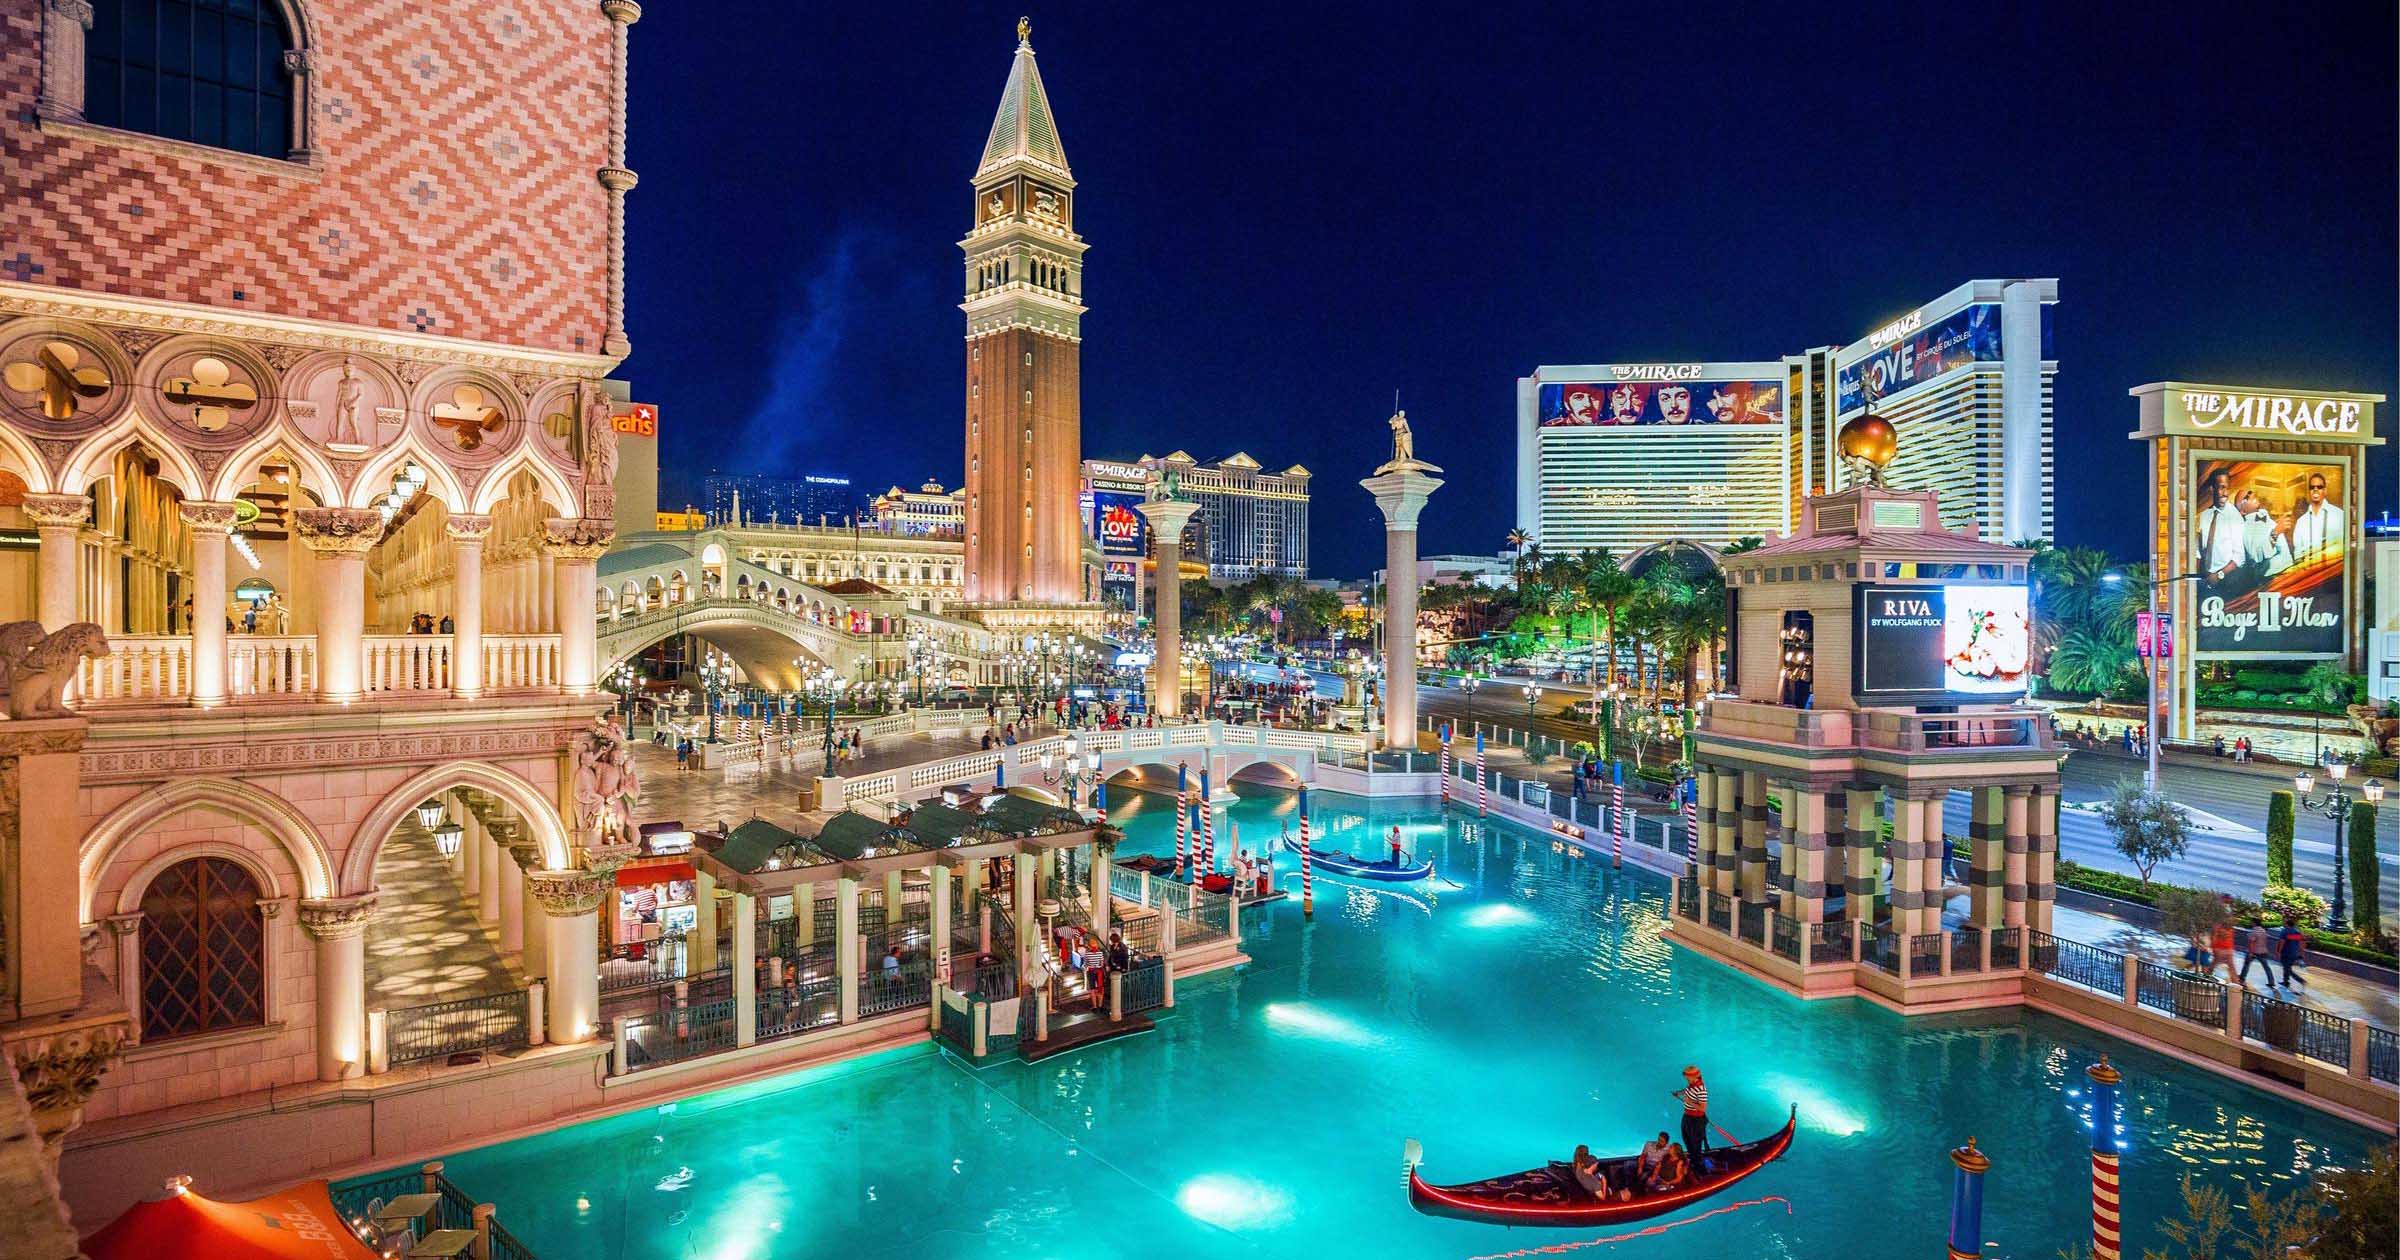 Venetian Las Vegas hotels